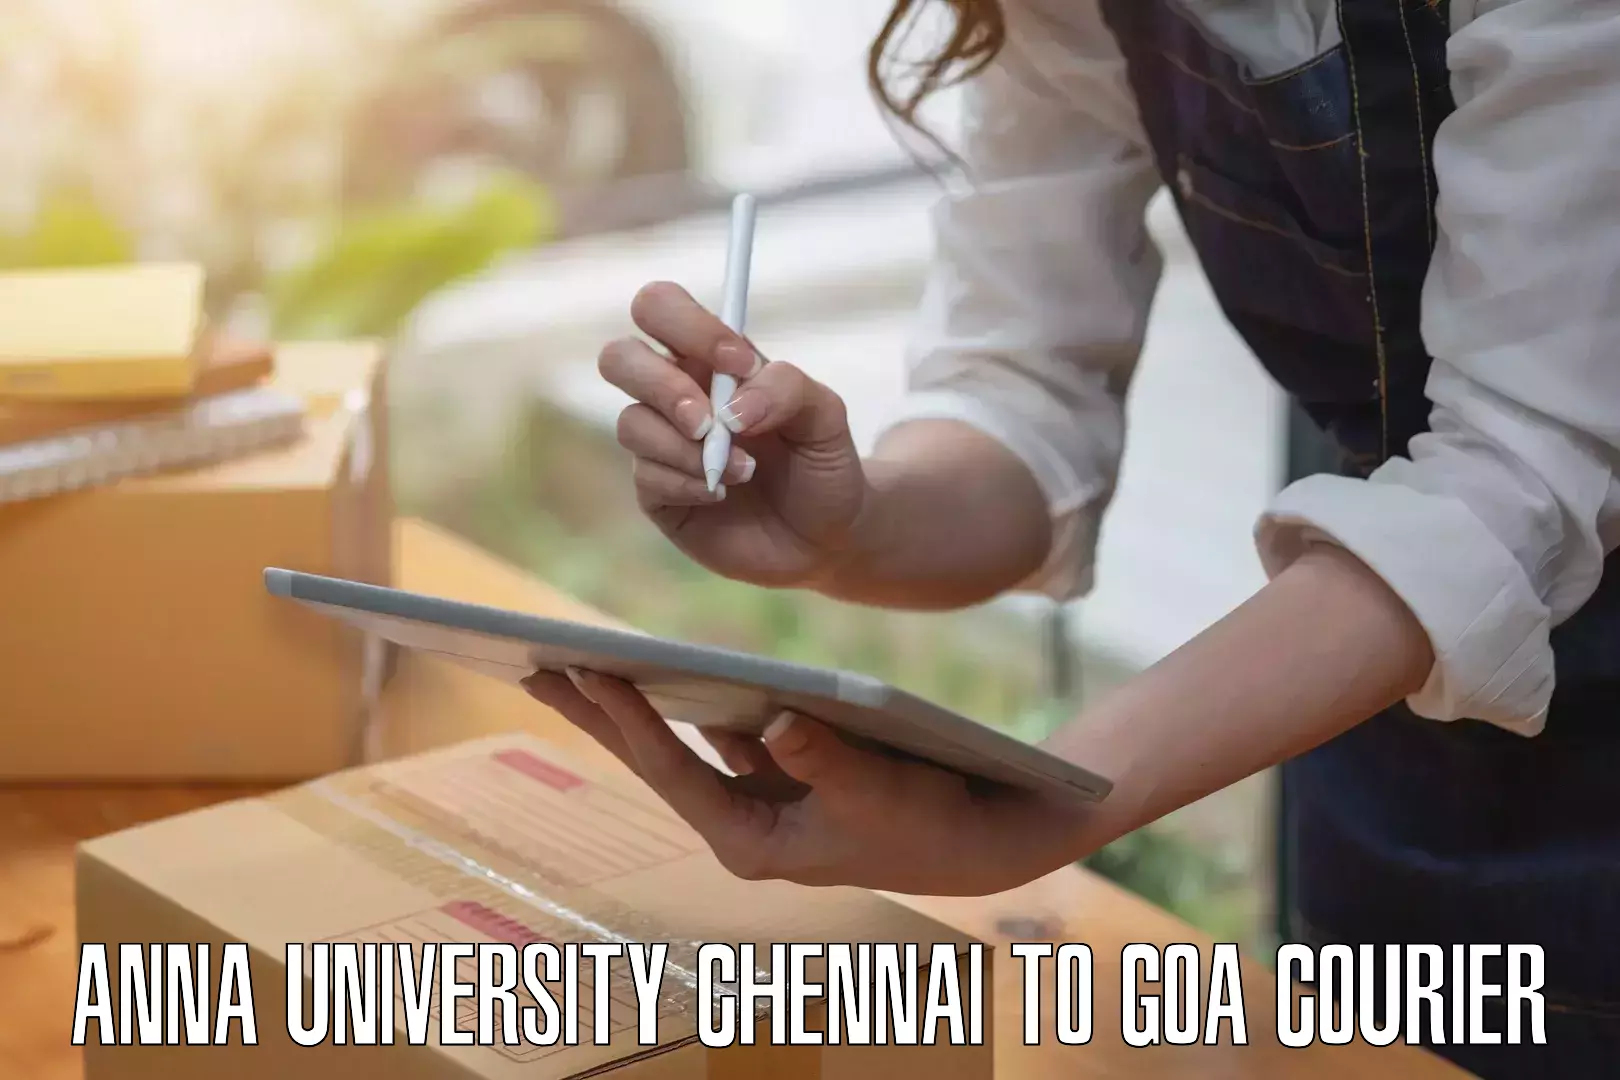 Luggage courier network Anna University Chennai to IIT Goa